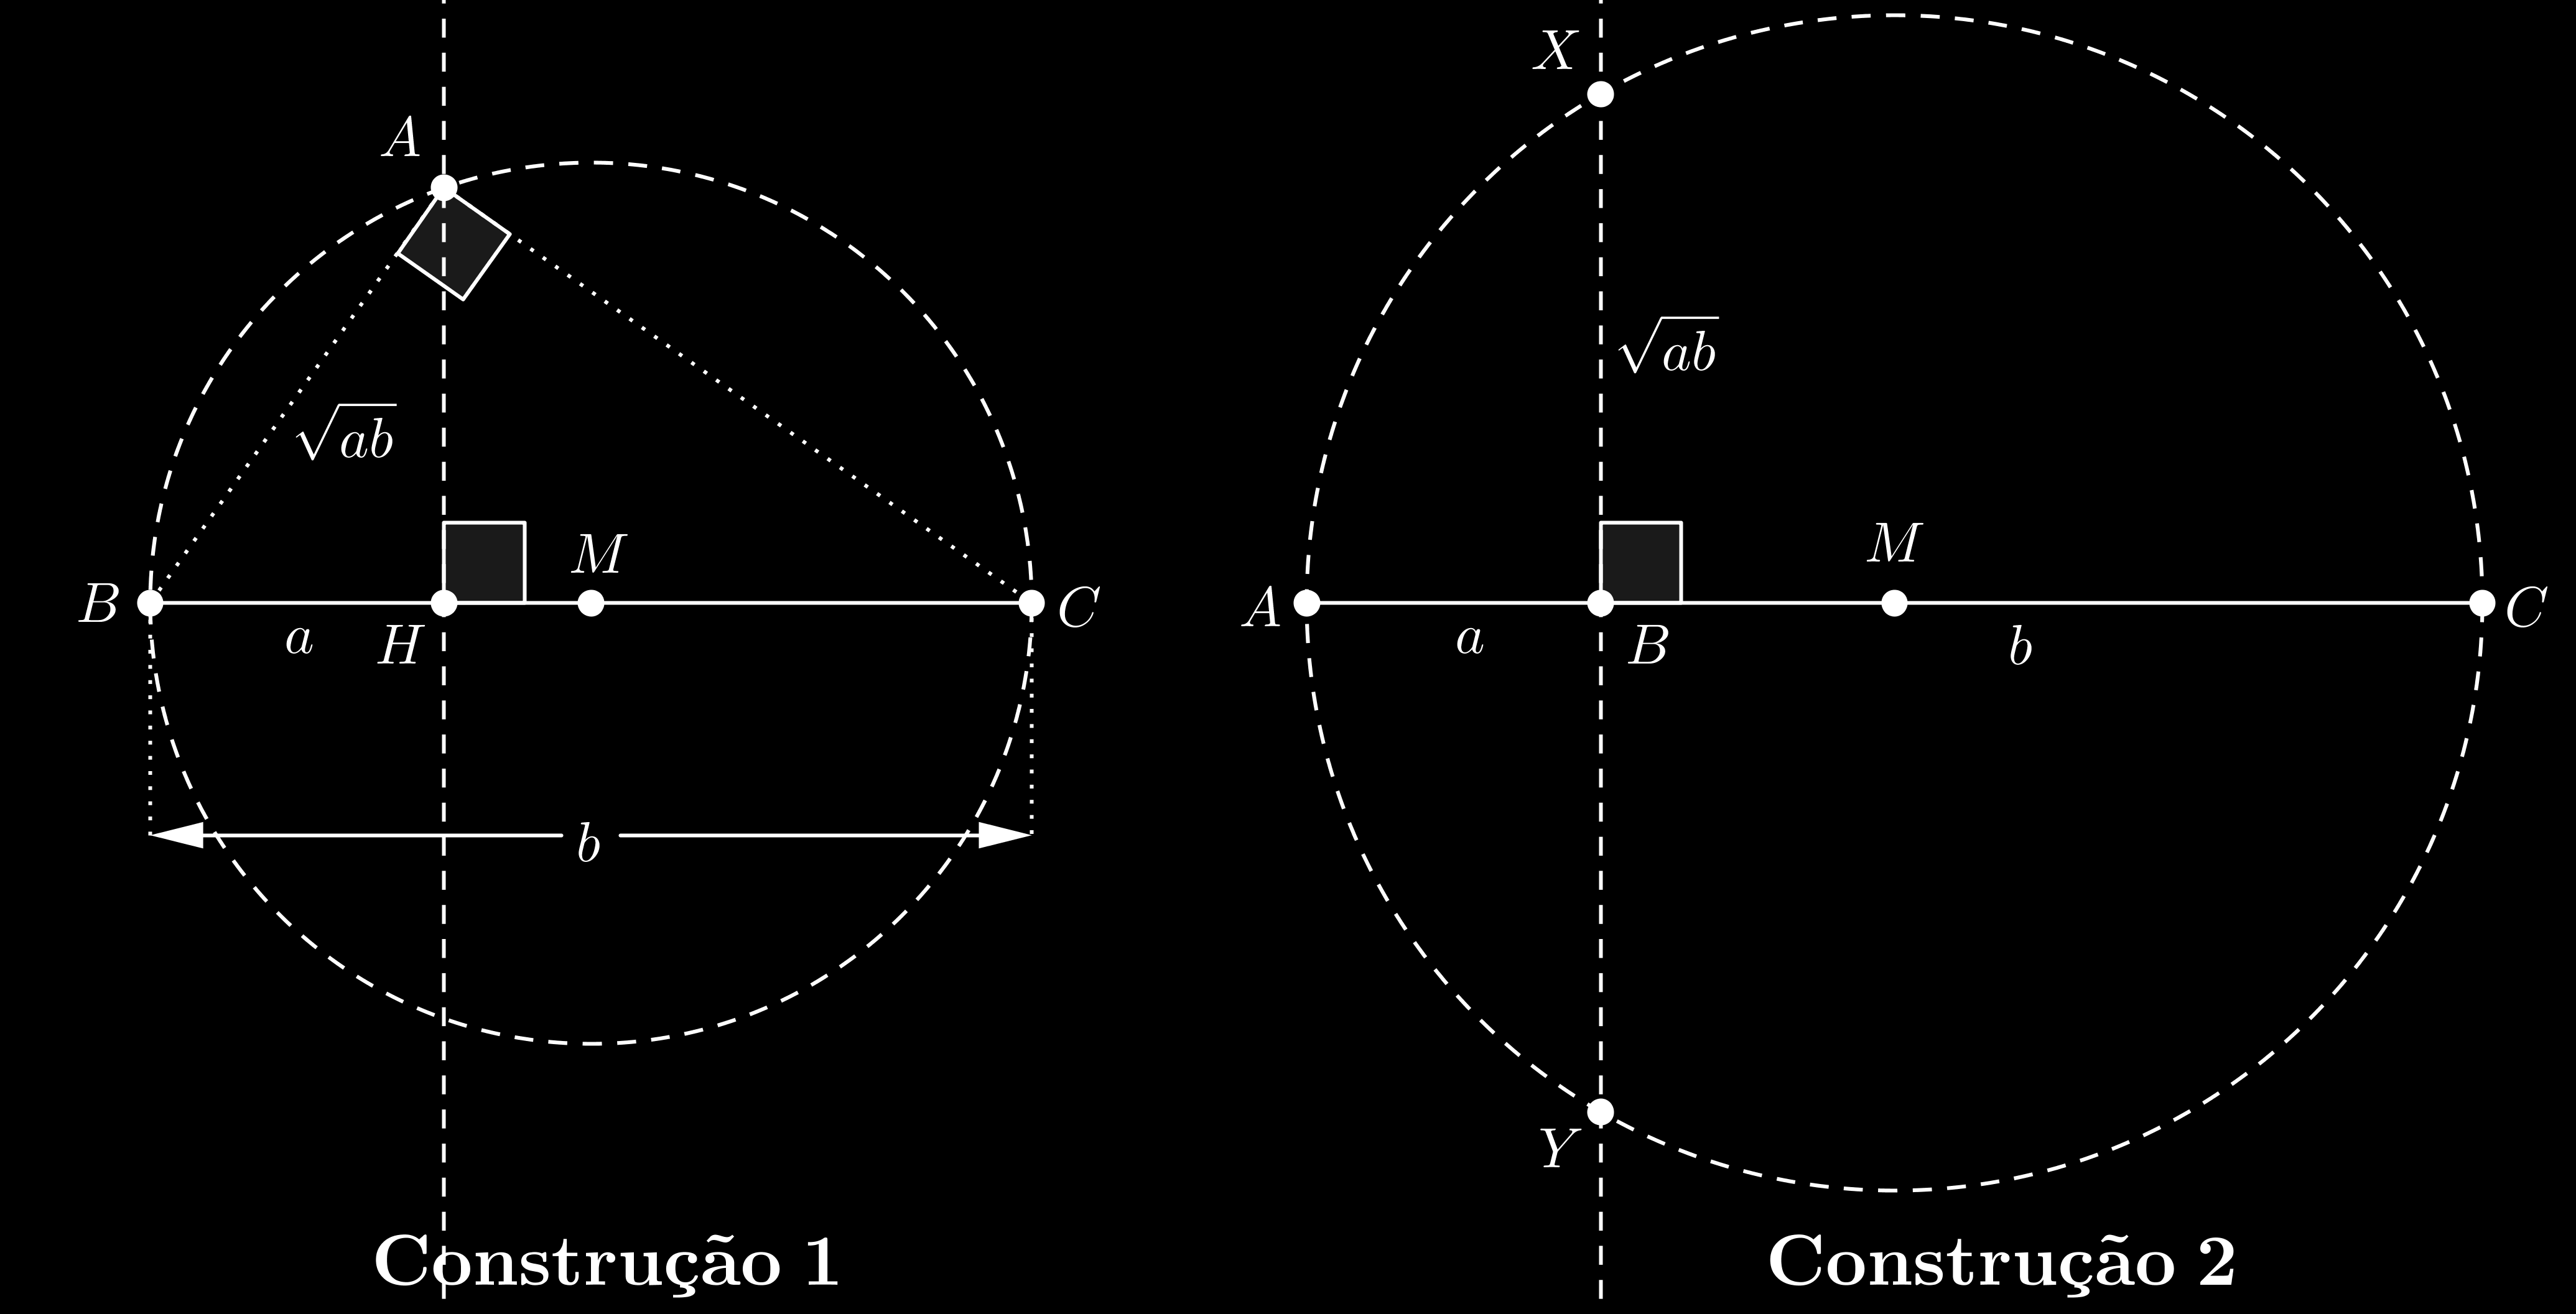 Observação: Considere conhecidas as construções do ponto médio de um segmento e da perpendicular a um segmento passando por um ponto dado, que podem ser utilizadas sem maiores detalhamentos.